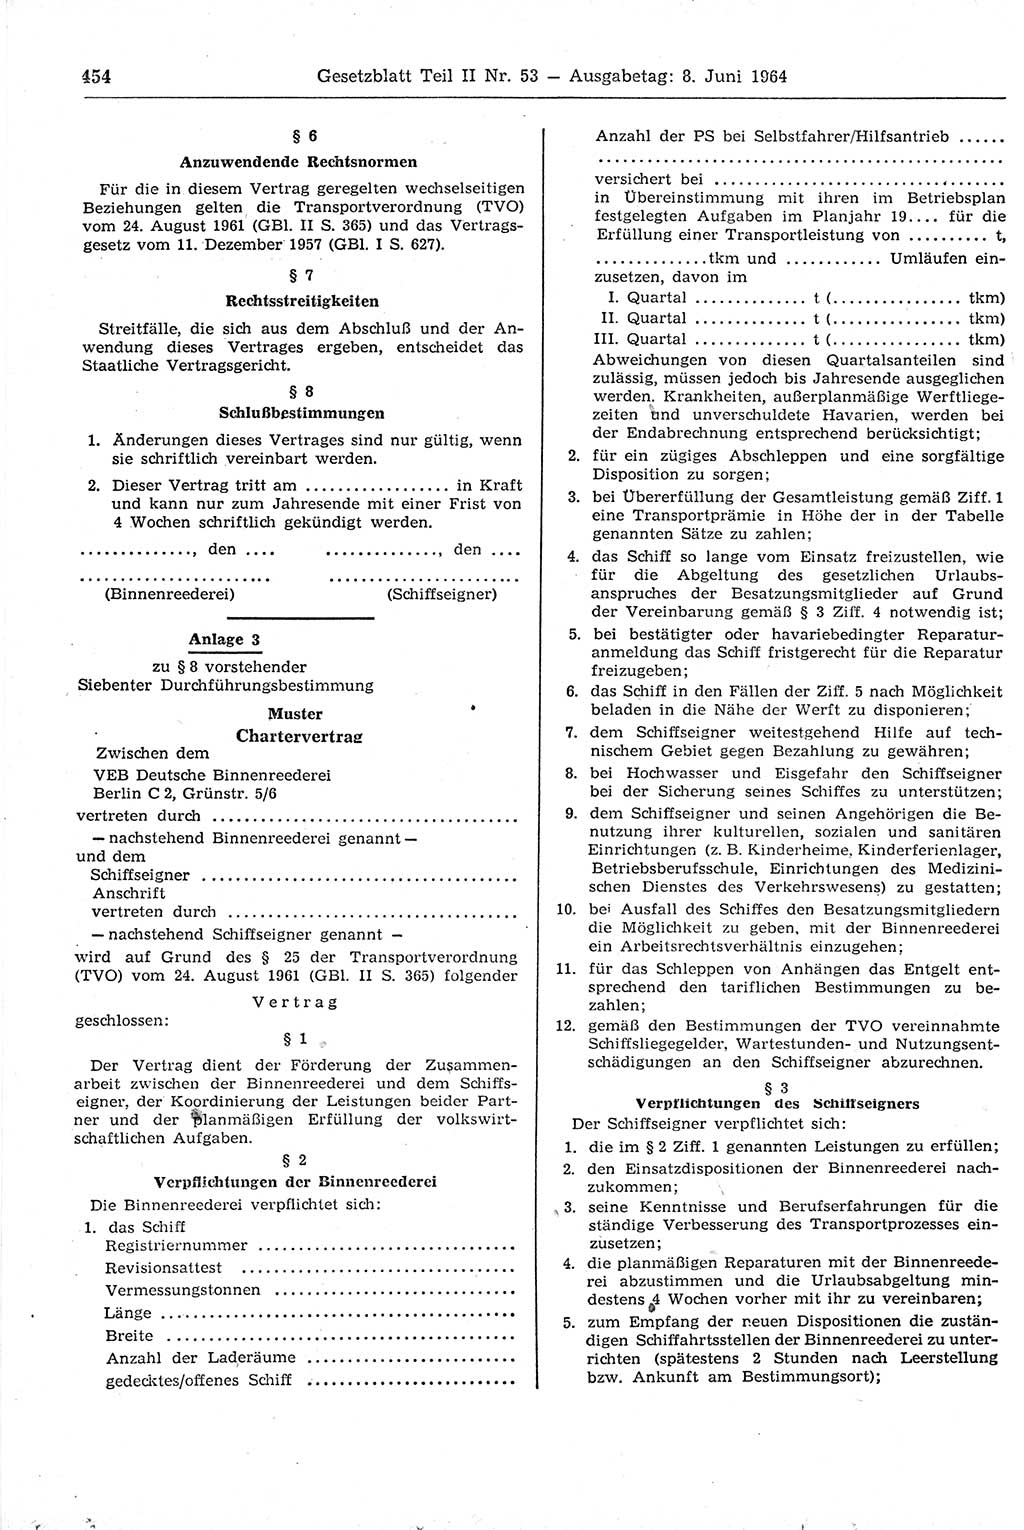 Gesetzblatt (GBl.) der Deutschen Demokratischen Republik (DDR) Teil ⅠⅠ 1964, Seite 454 (GBl. DDR ⅠⅠ 1964, S. 454)